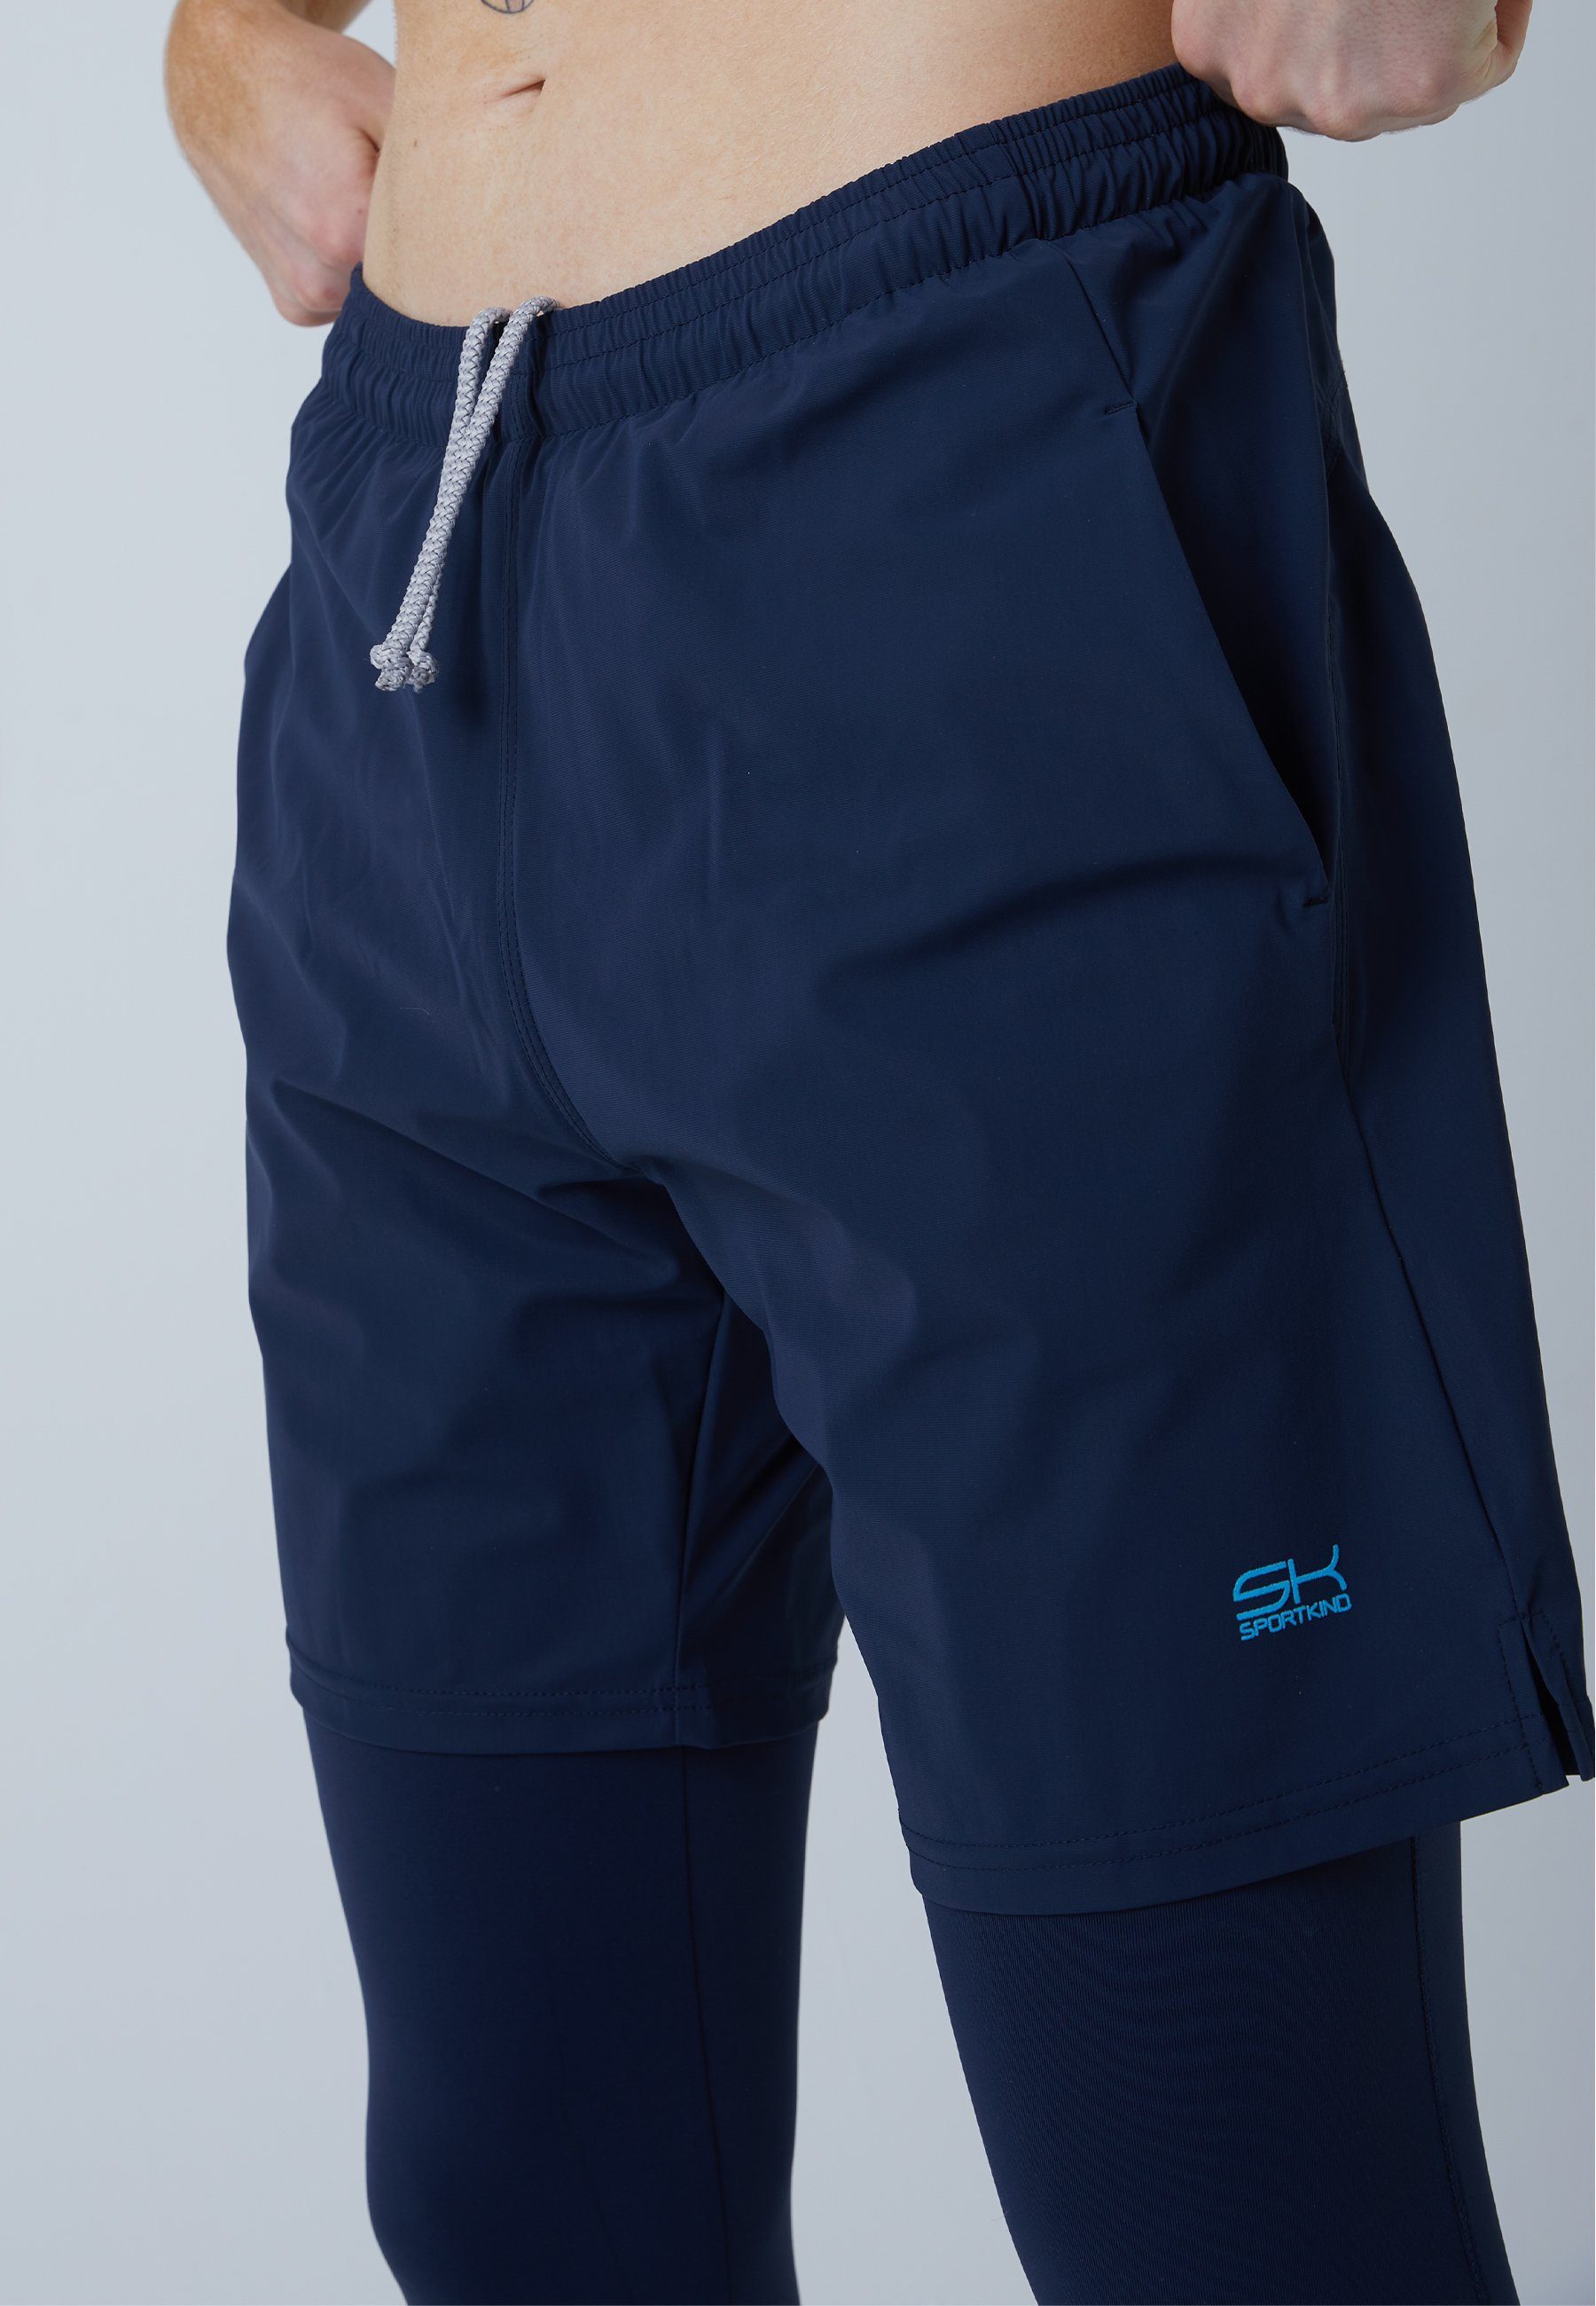 & Herren Sporthose mit Leggings Shorts Jungen navy 2-in-1 SPORTKIND blau